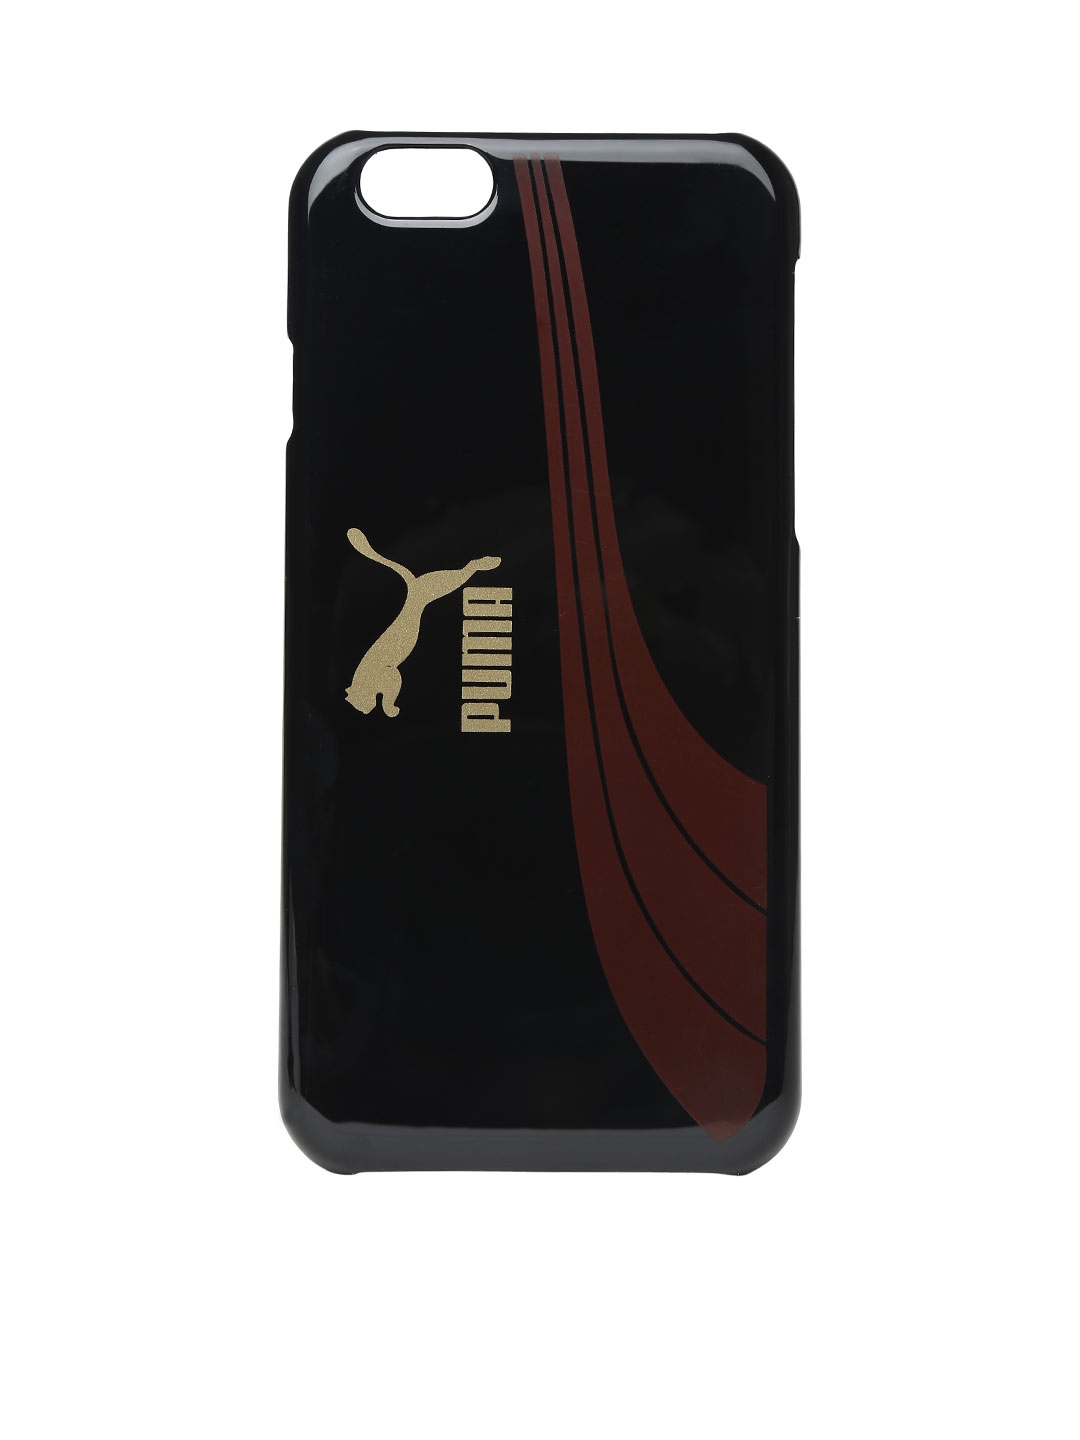 puma iphone 6 case